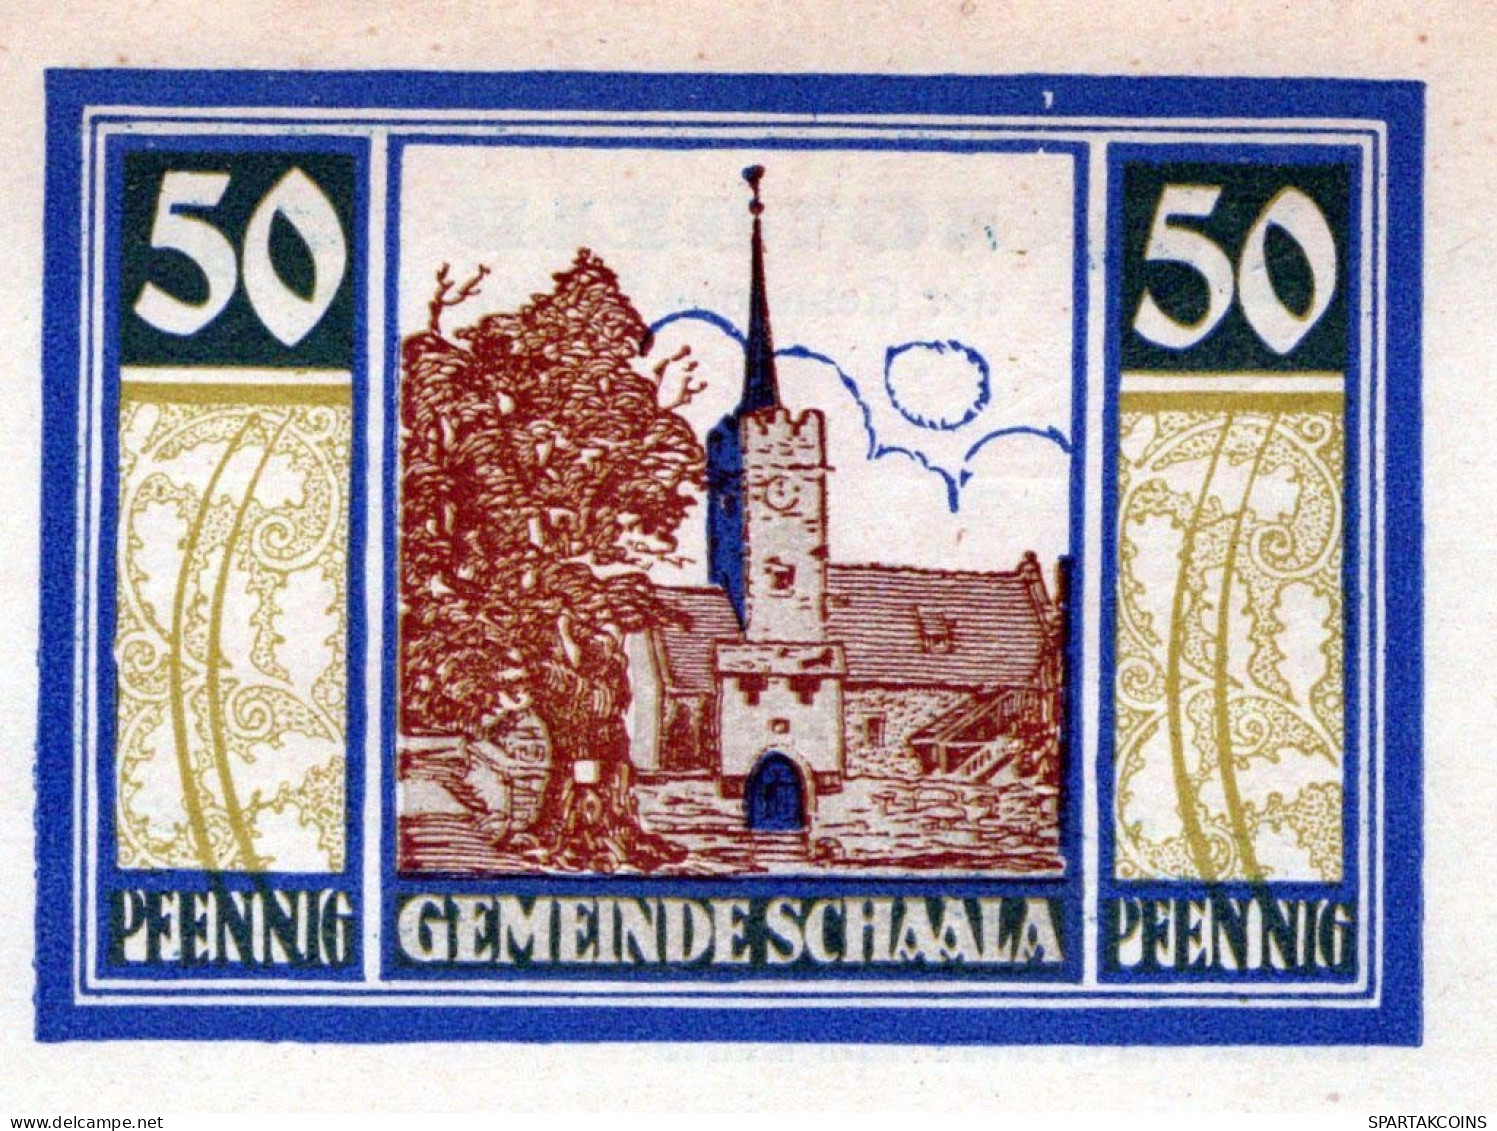 50 PFENNIG 1921 Stadt SCHAALA Thuringia UNC DEUTSCHLAND Notgeld Banknote #PH973 - [11] Emissioni Locali